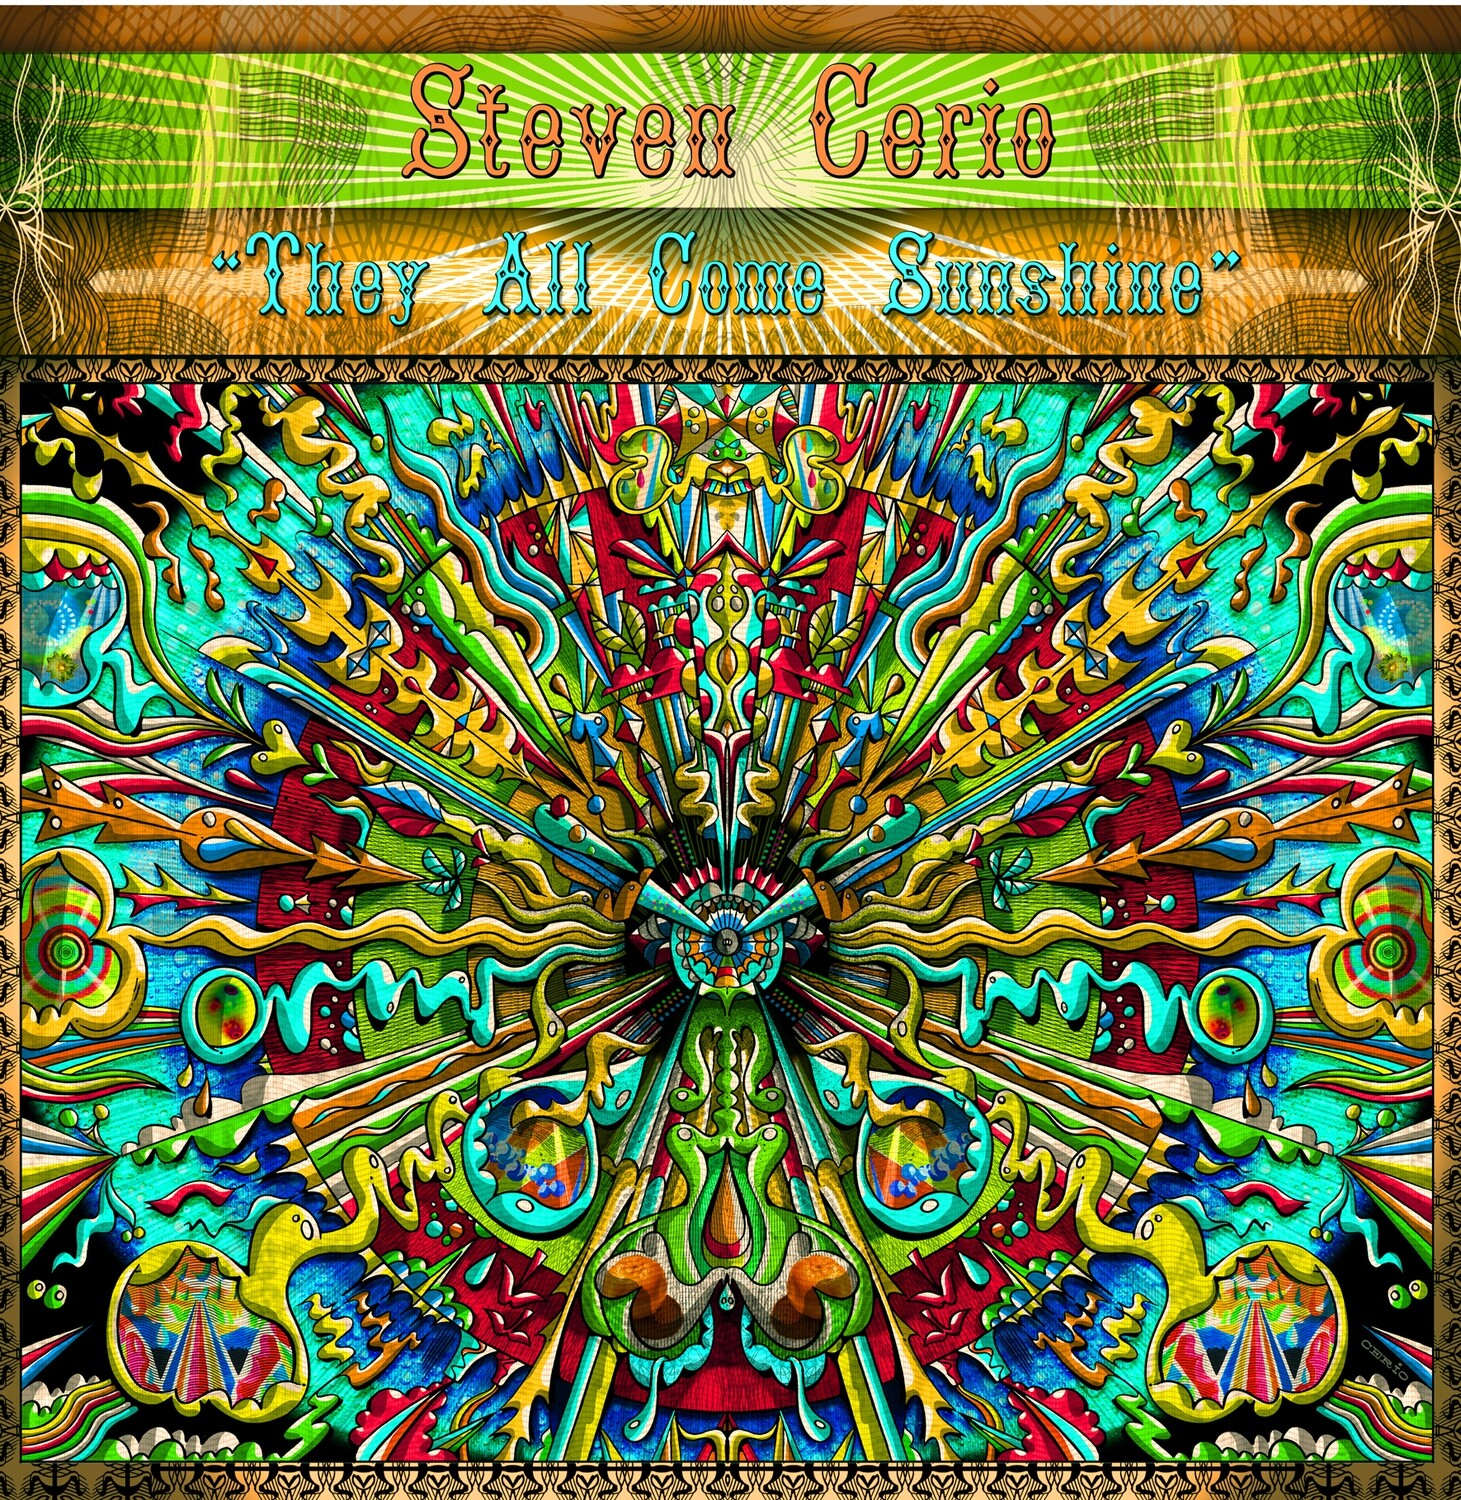 PR-047 - Steven Cerio – They All Come Sunshine - CD